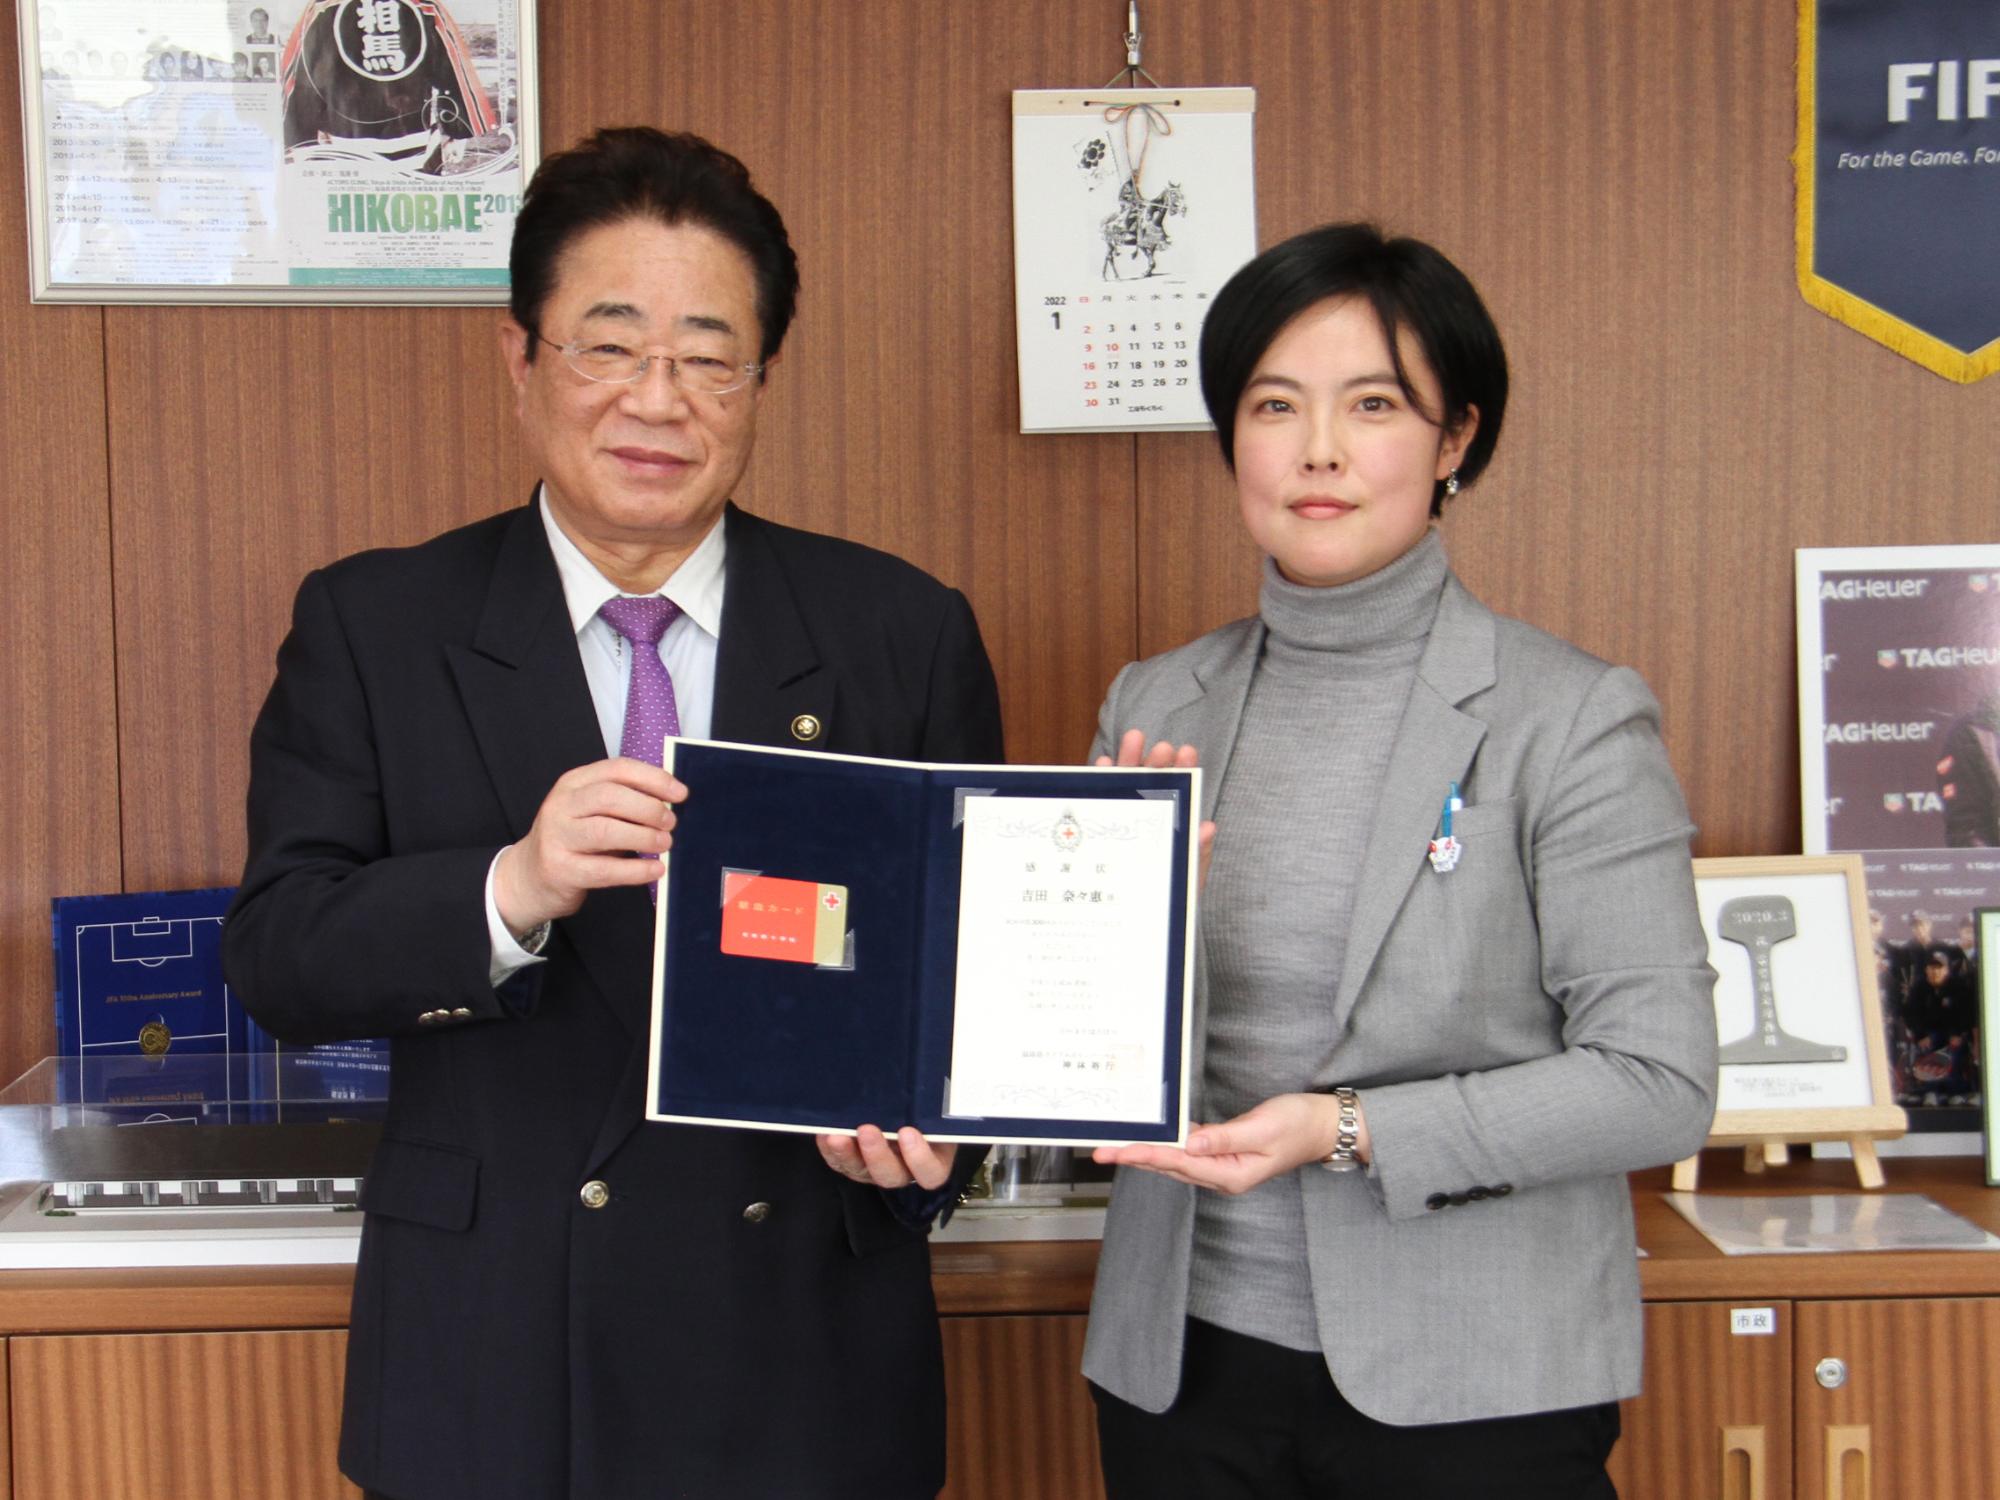 吉田さんが日本赤十字社感謝状受賞を立谷市長に報告する様子